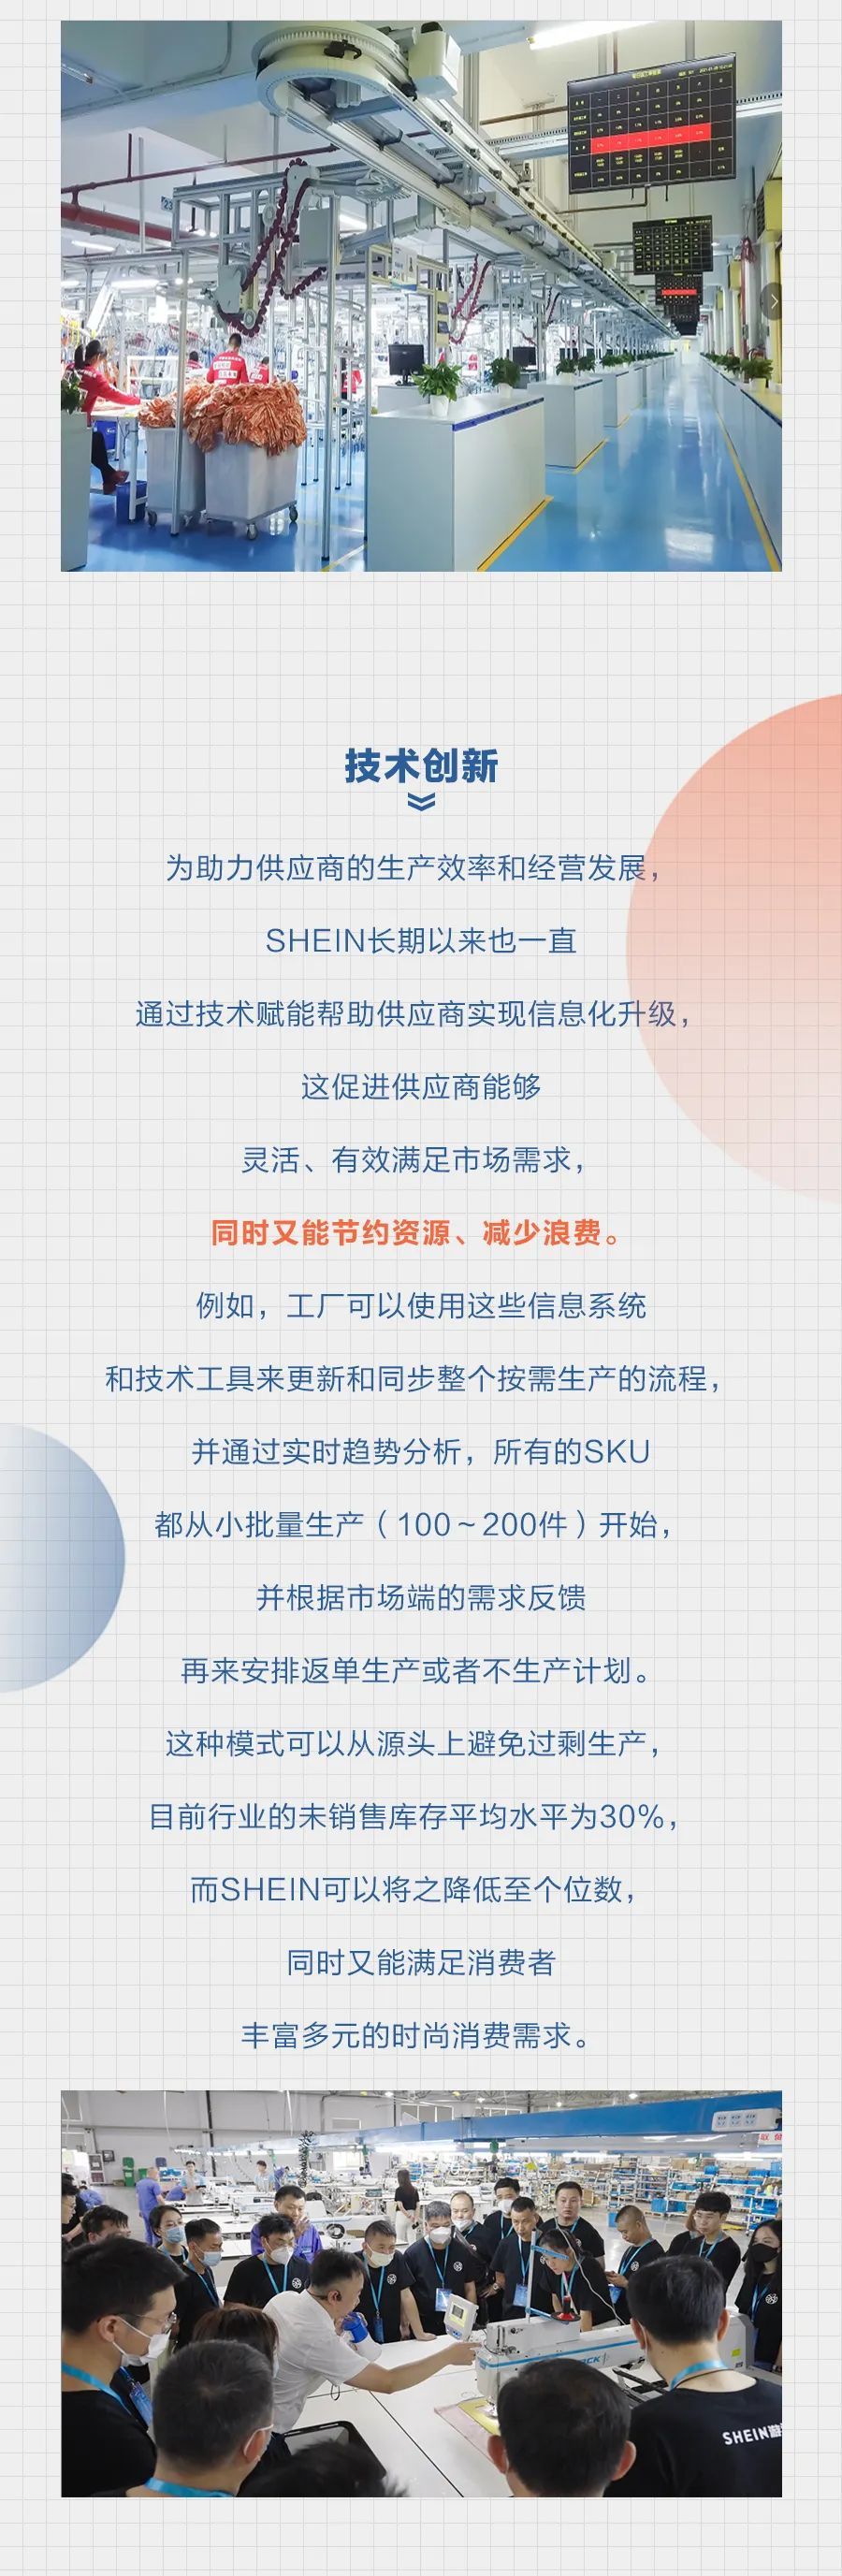 SHEIN宣布扩大供应商社区赋能计划